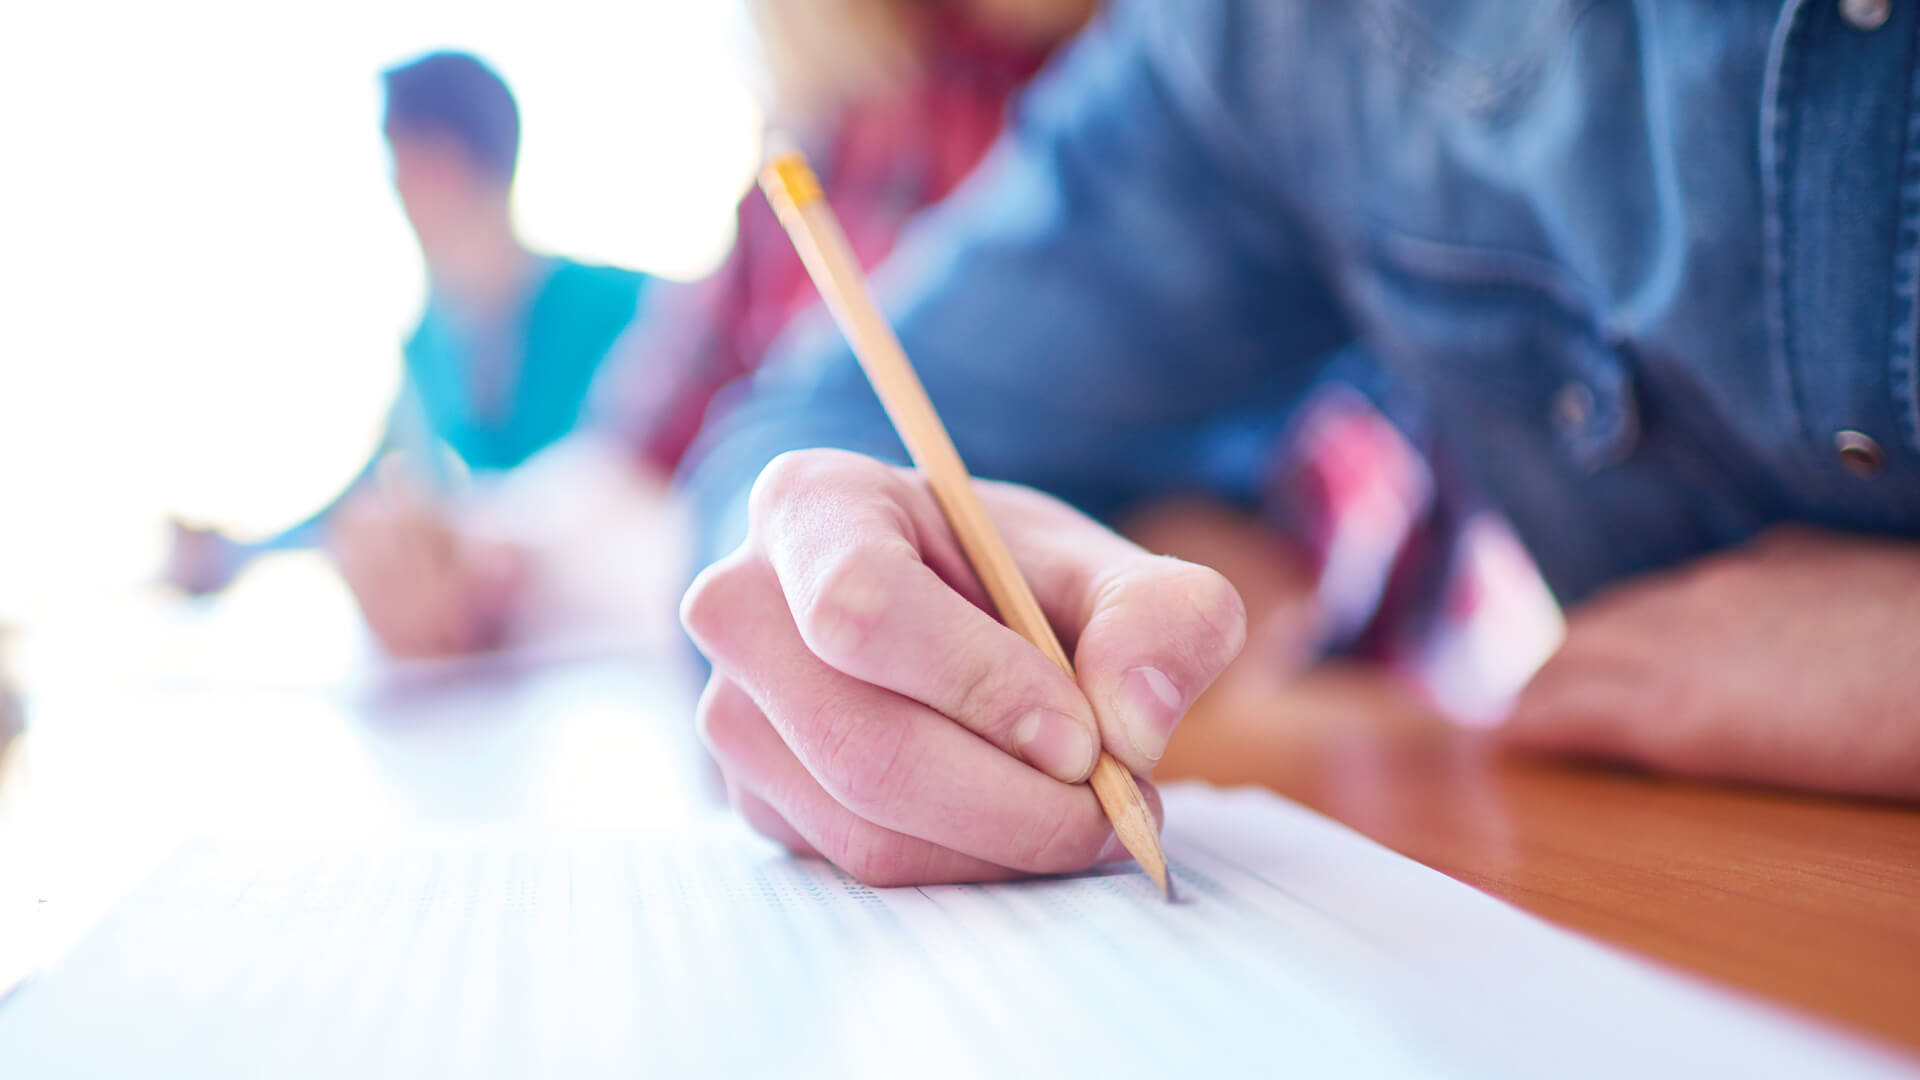 Gros plan sur la main d'un étudiant tenant un crayon au-dessus d'une feuille pendant un examen, avec des camarades en arrière-plan.